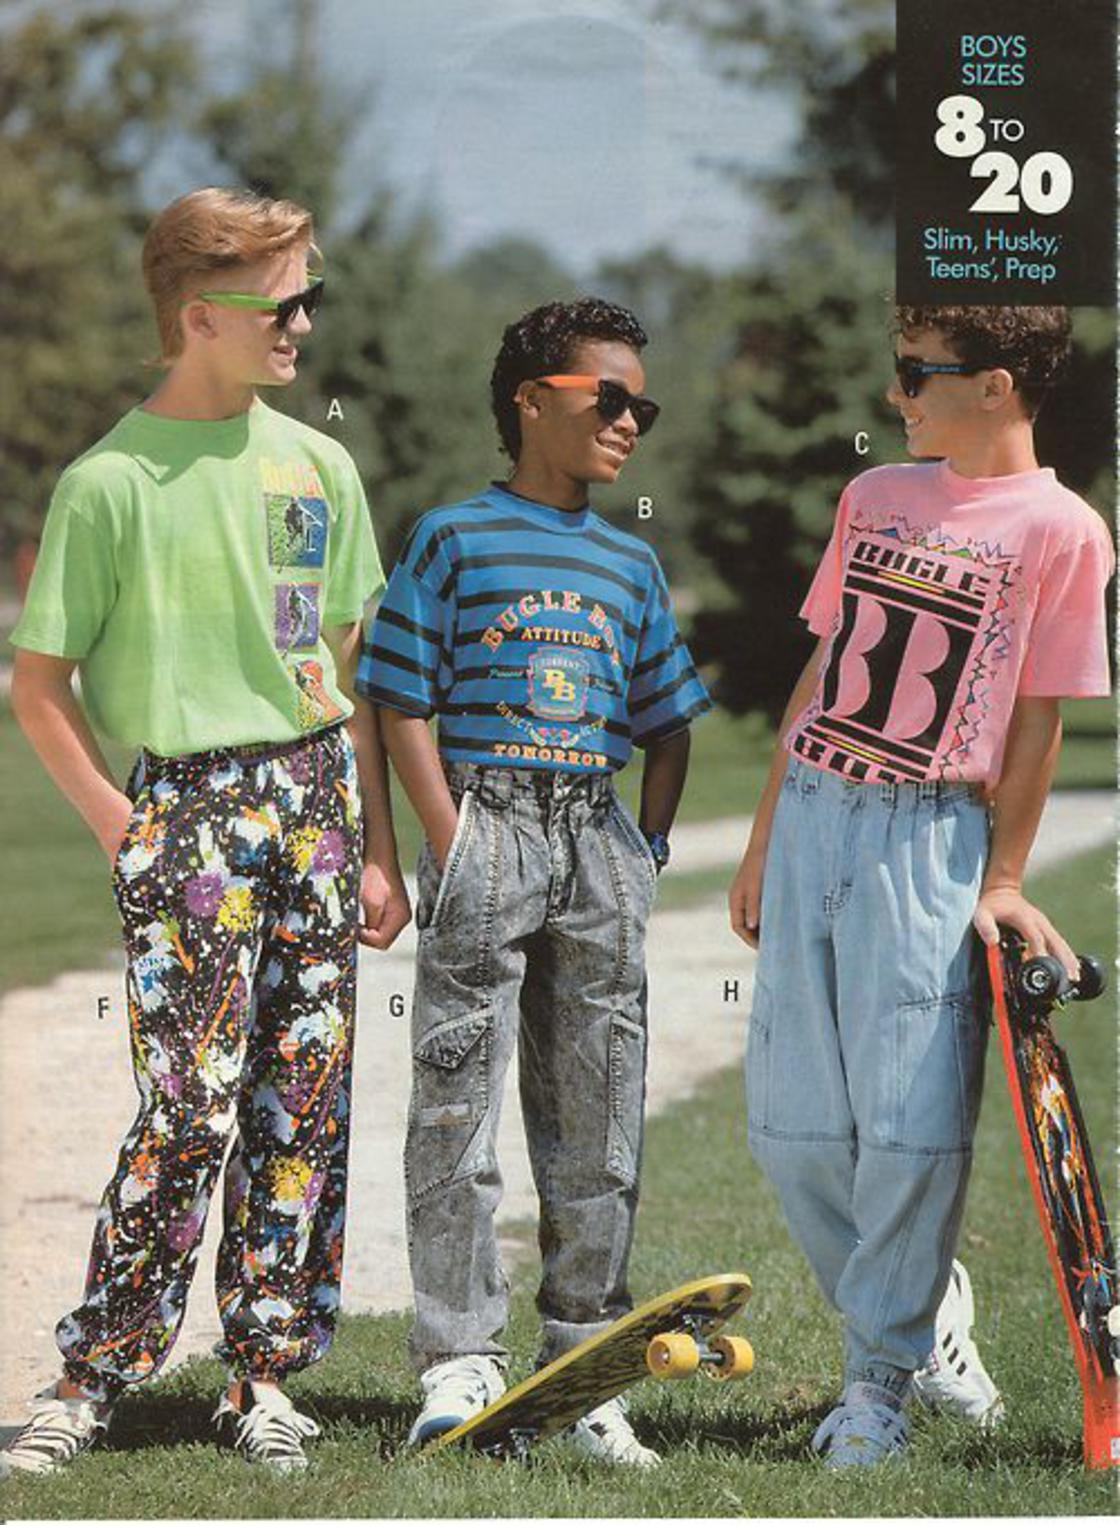 90's era fashion advertisement